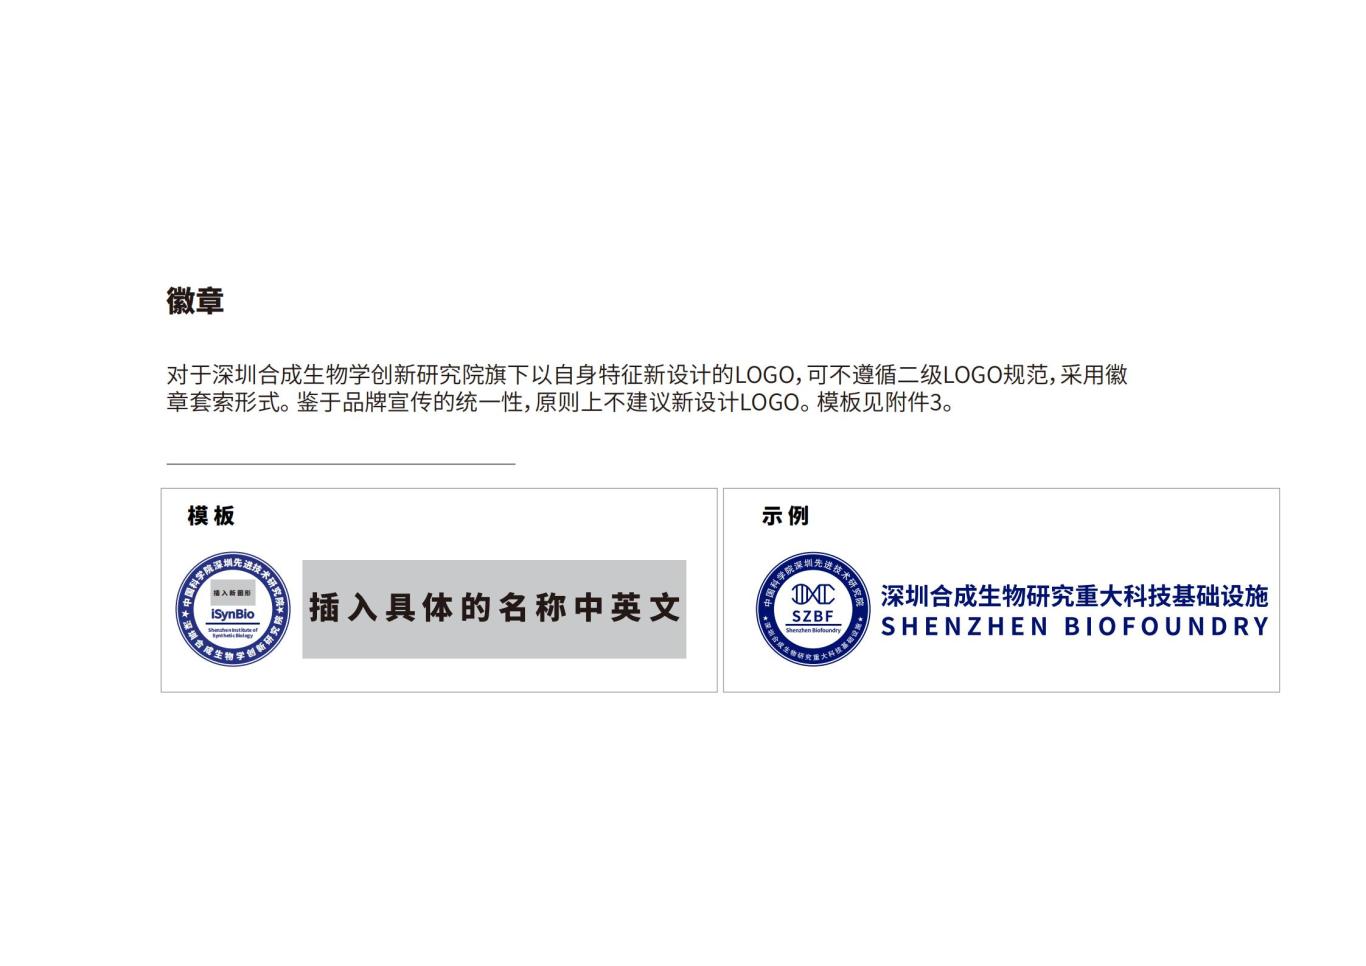 深圳合成生物学创新研究院品牌设计规范图21